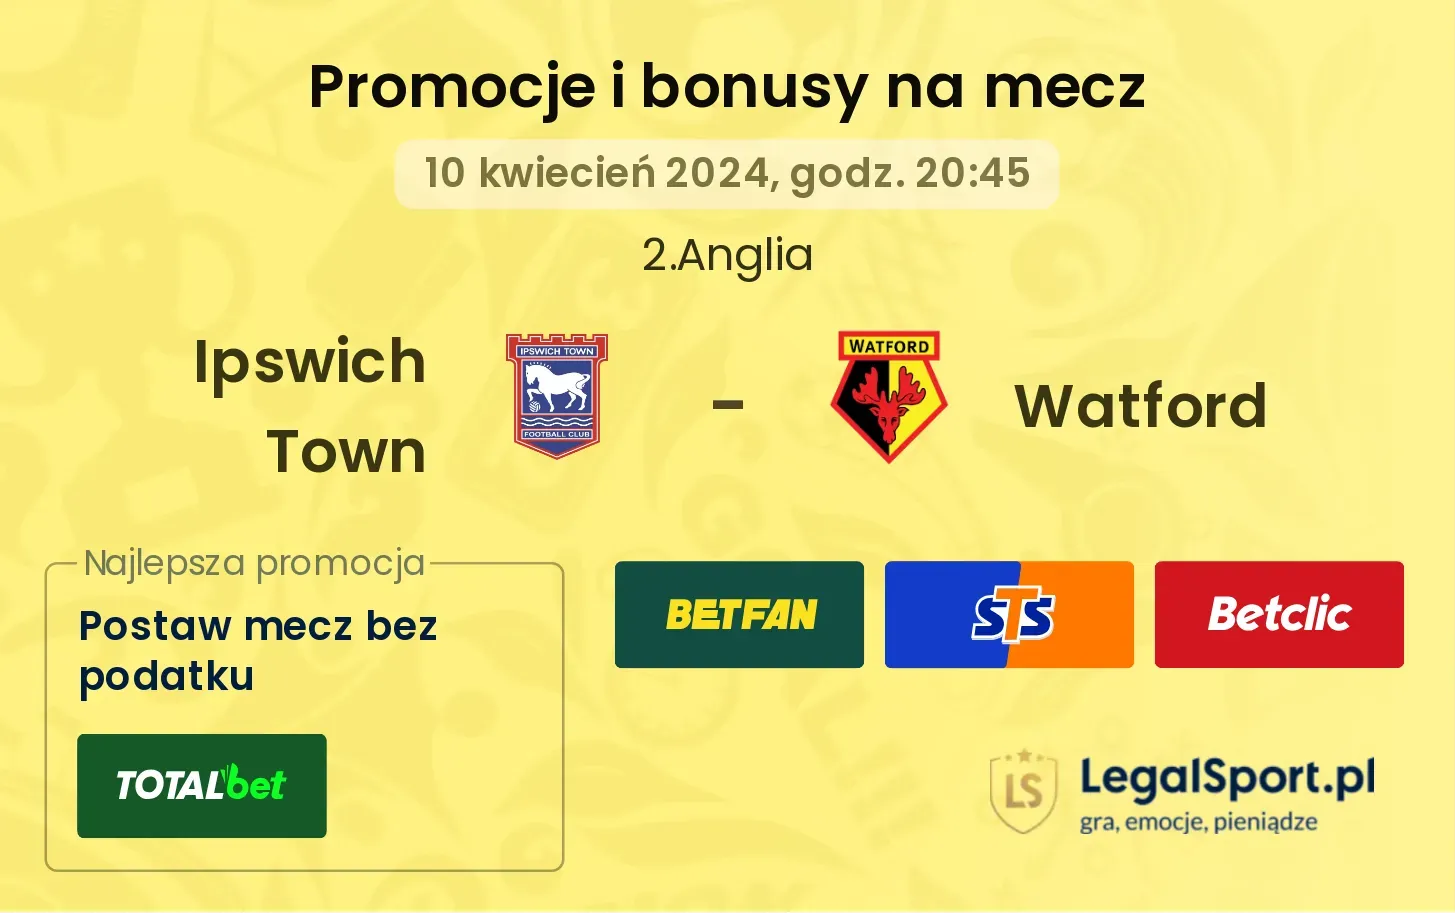 Ipswich Town - Watford promocje bonusy na mecz